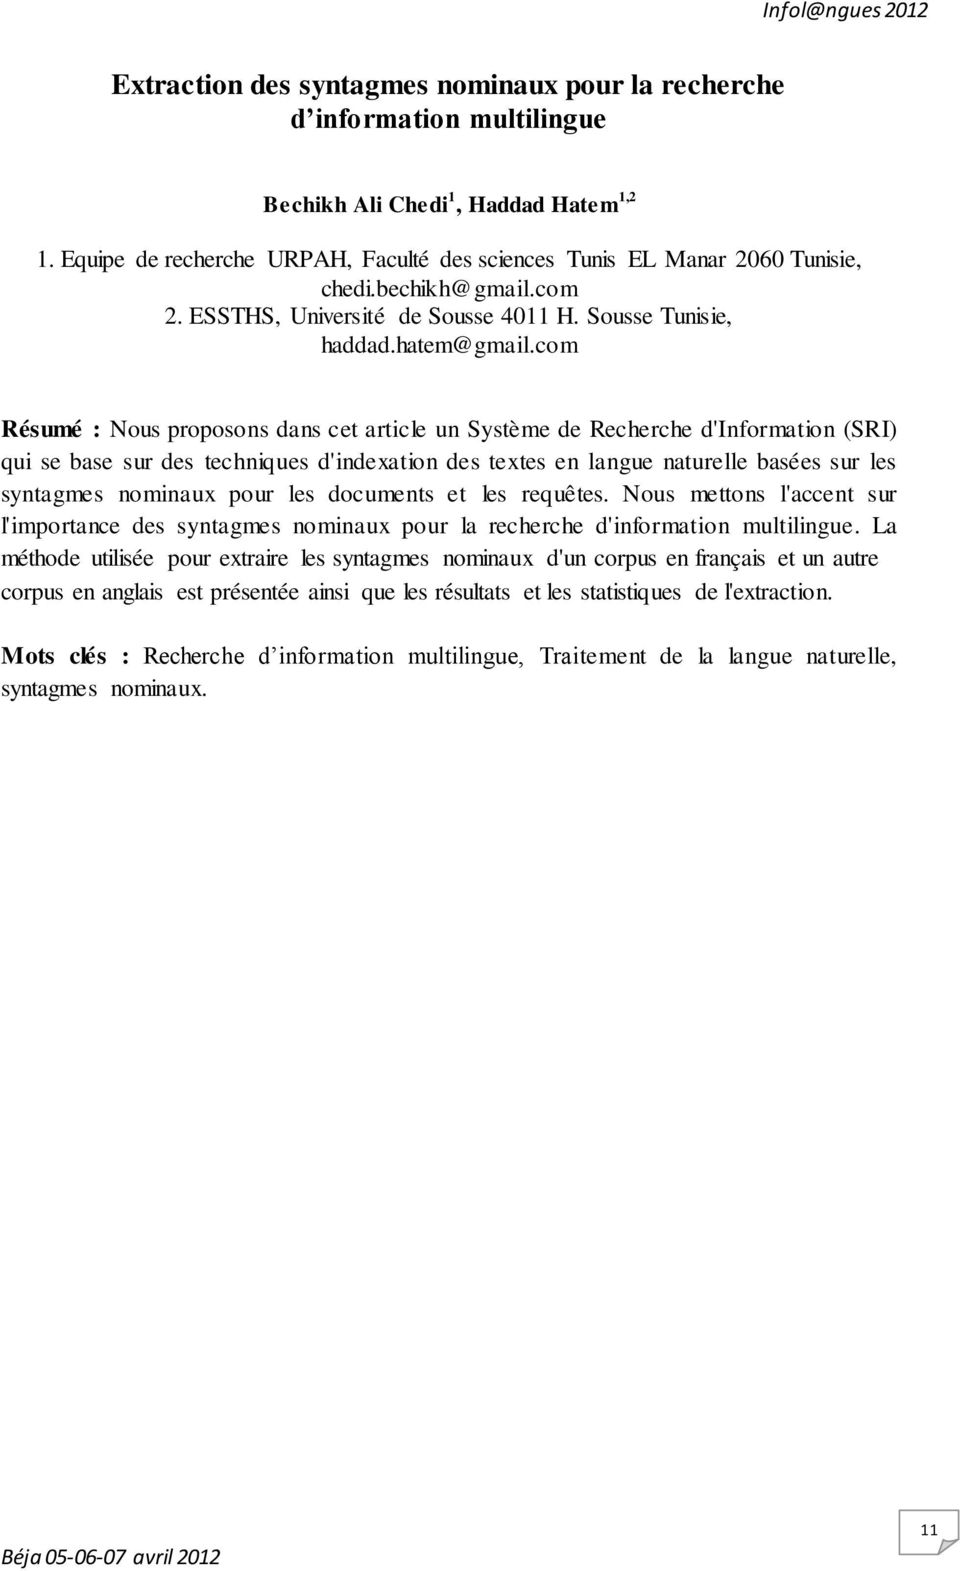 com Résumé : Nous proposons dans cet article un Système de Recherche d'information (SRI) qui se base sur des techniques d'indexation des textes en langue naturelle basées sur les syntagmes nominaux